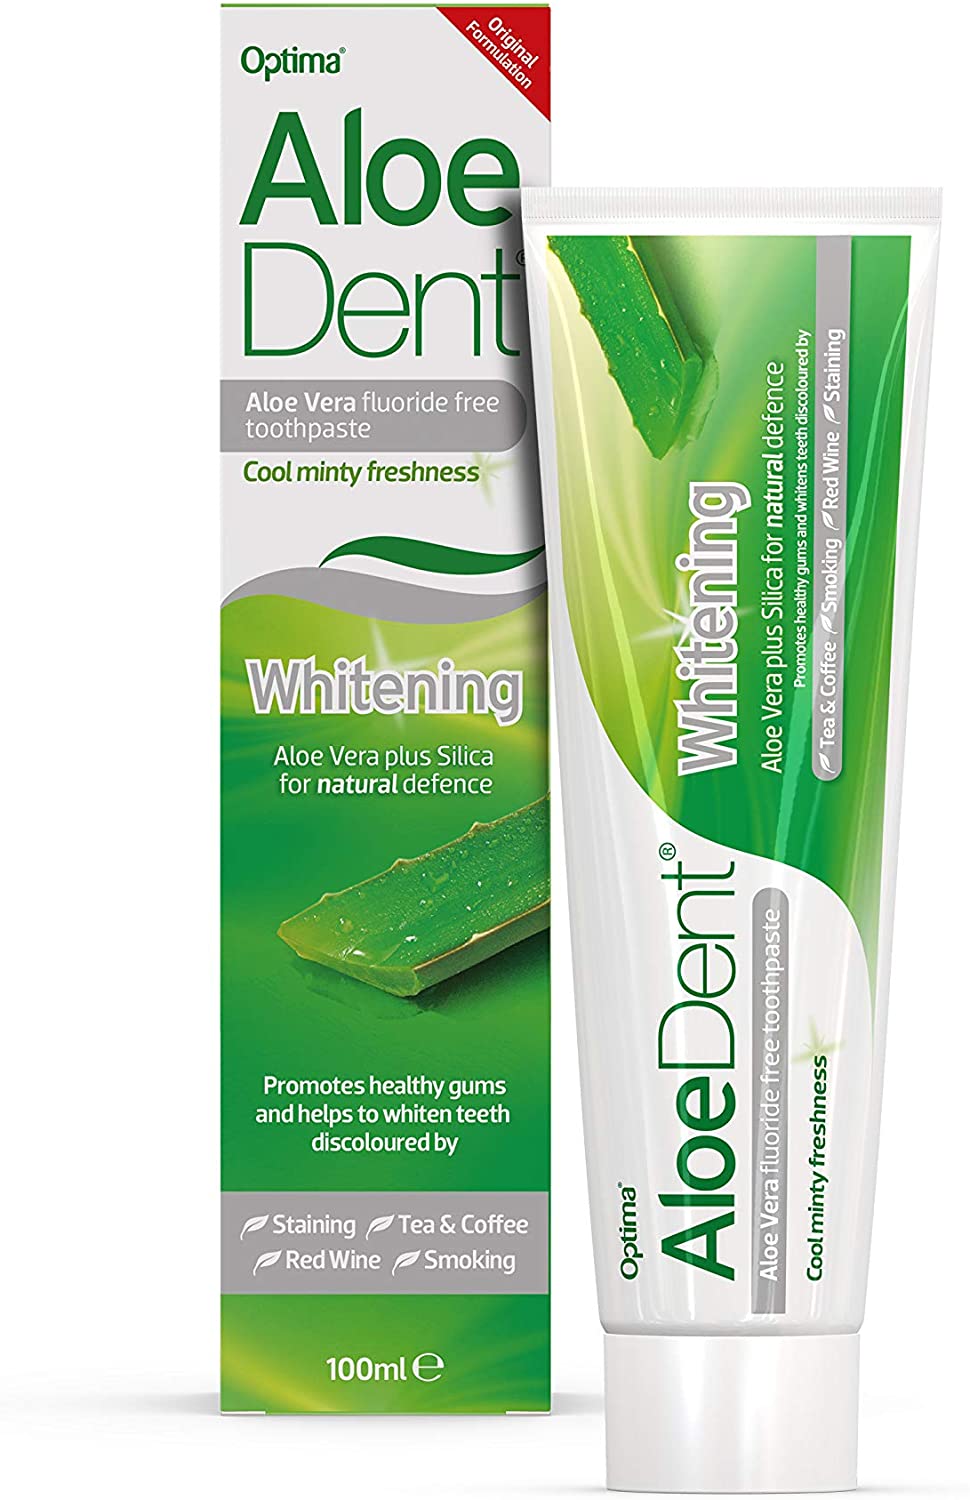 Aloe dent- Whitening Aloe Vera Fluoride Free Toothpaste